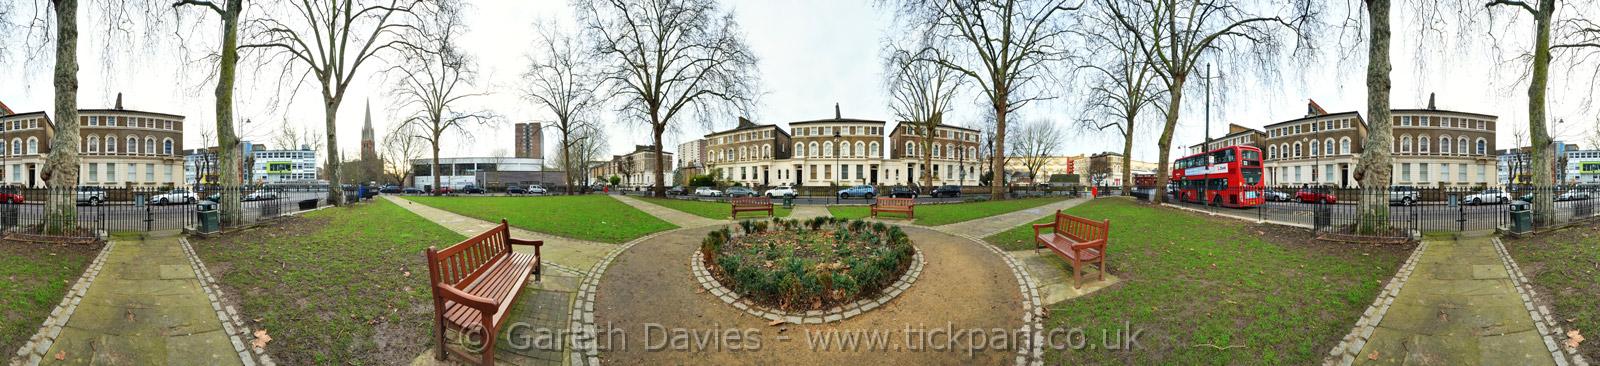 Cambridge Square and Gardens